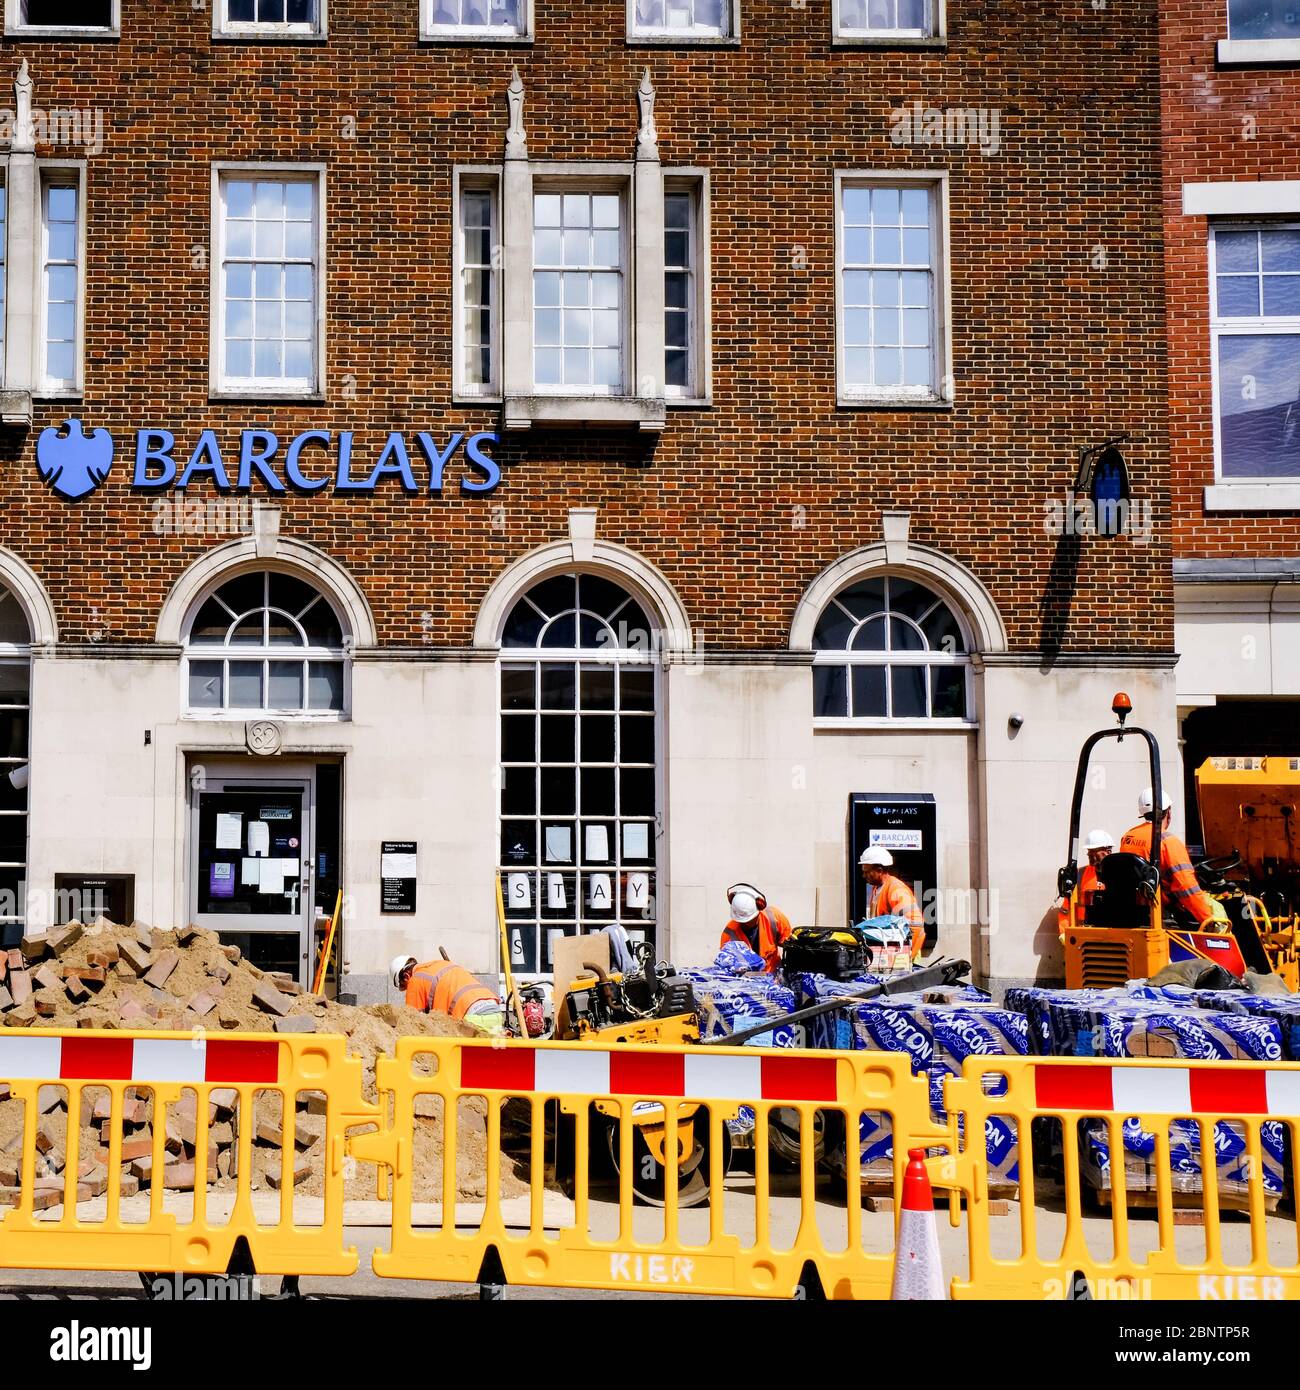 Les travailleurs de la construction retournent travailler à l'extérieur de la Barclays Bank dans le sud de Londres pendant le programme de verrouillage du coronavirus Banque D'Images